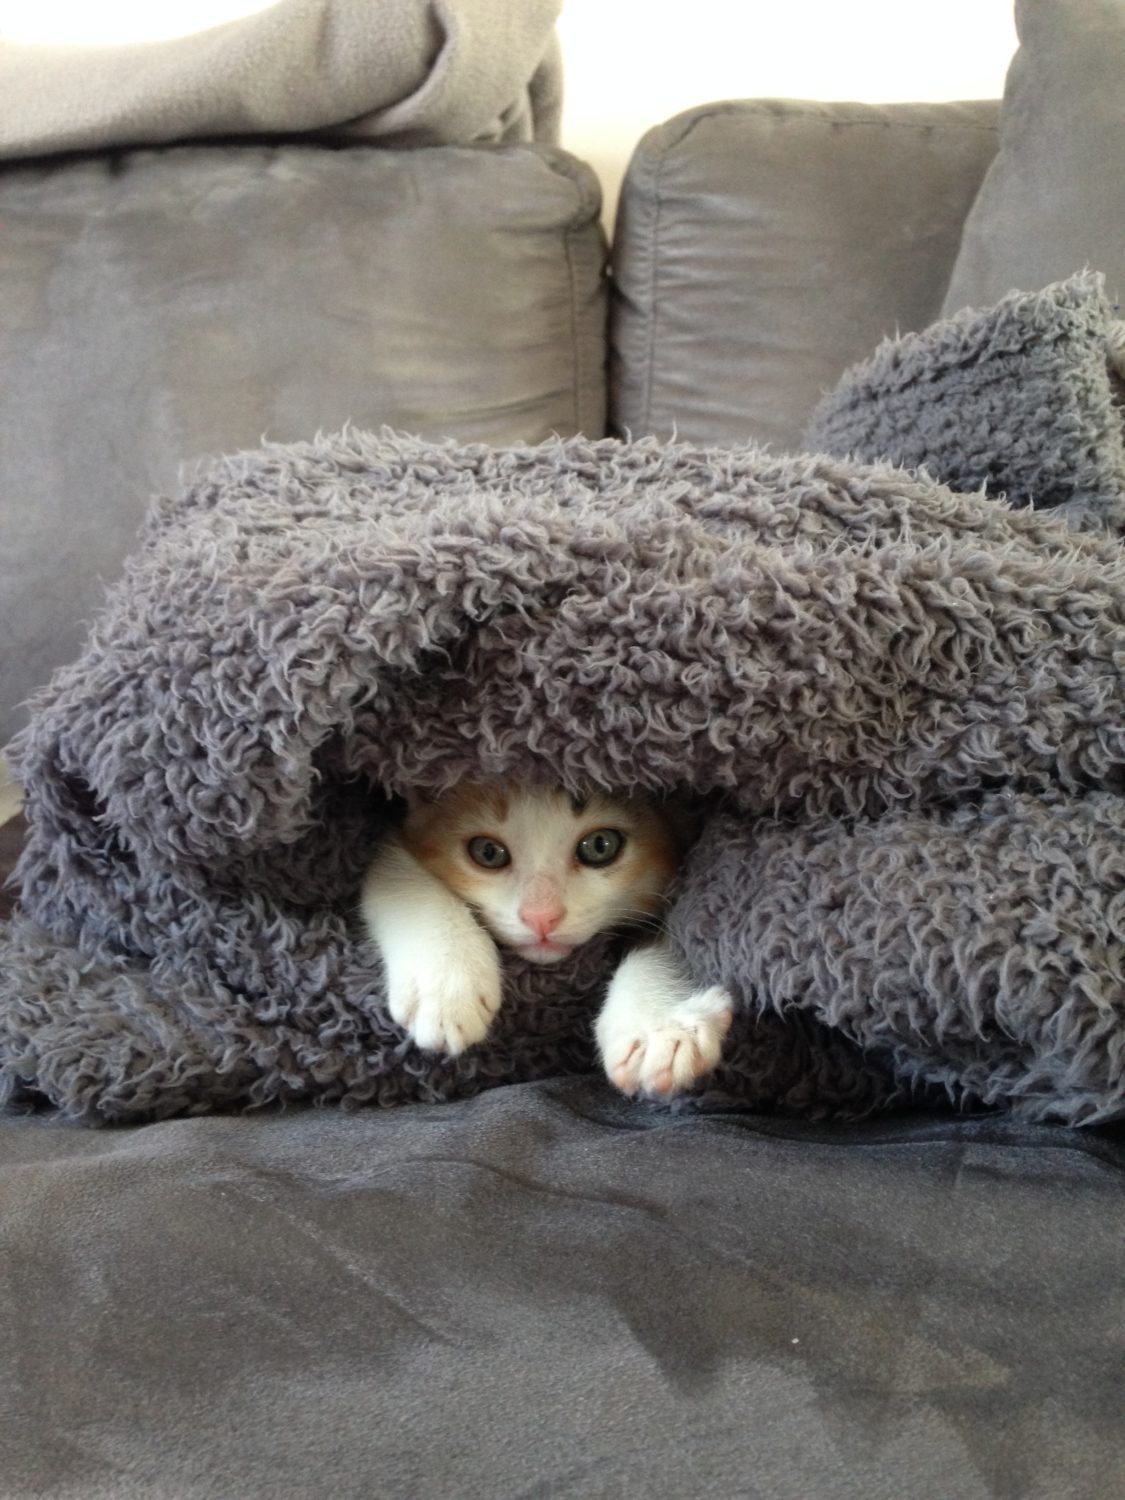 Kitten hidden in a blanket